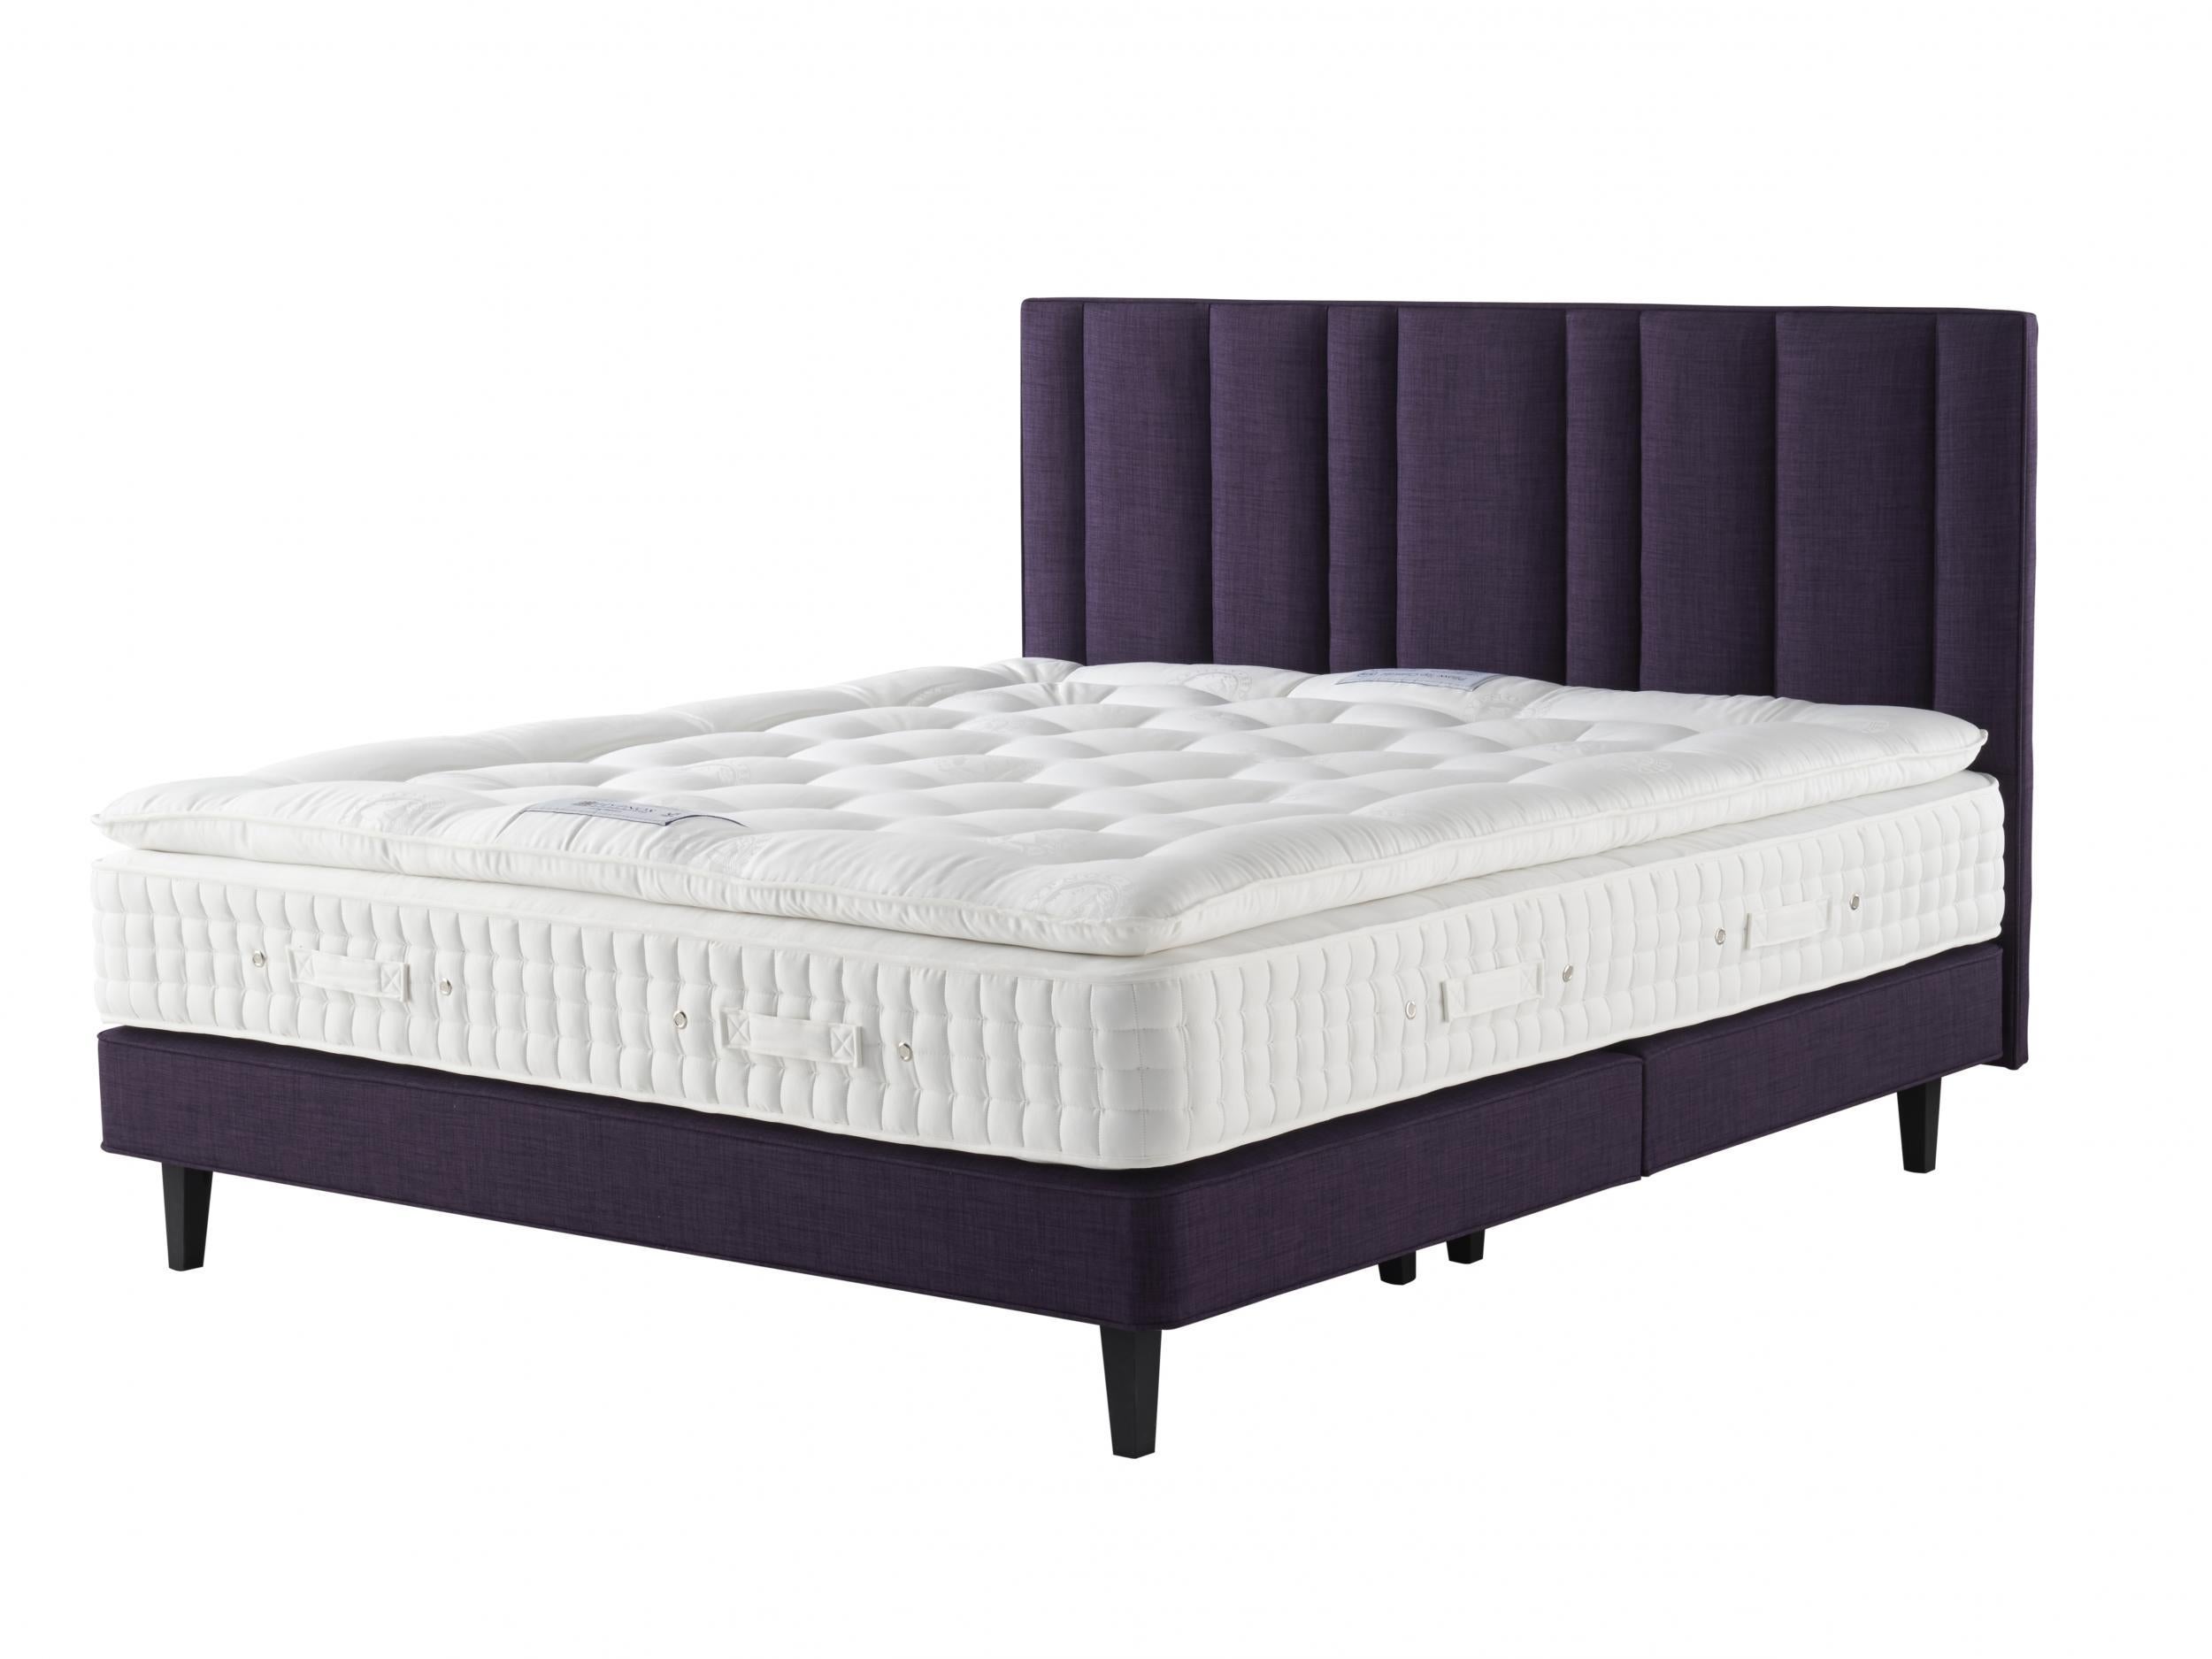 hypnos pillow top sapphire mattress reviews